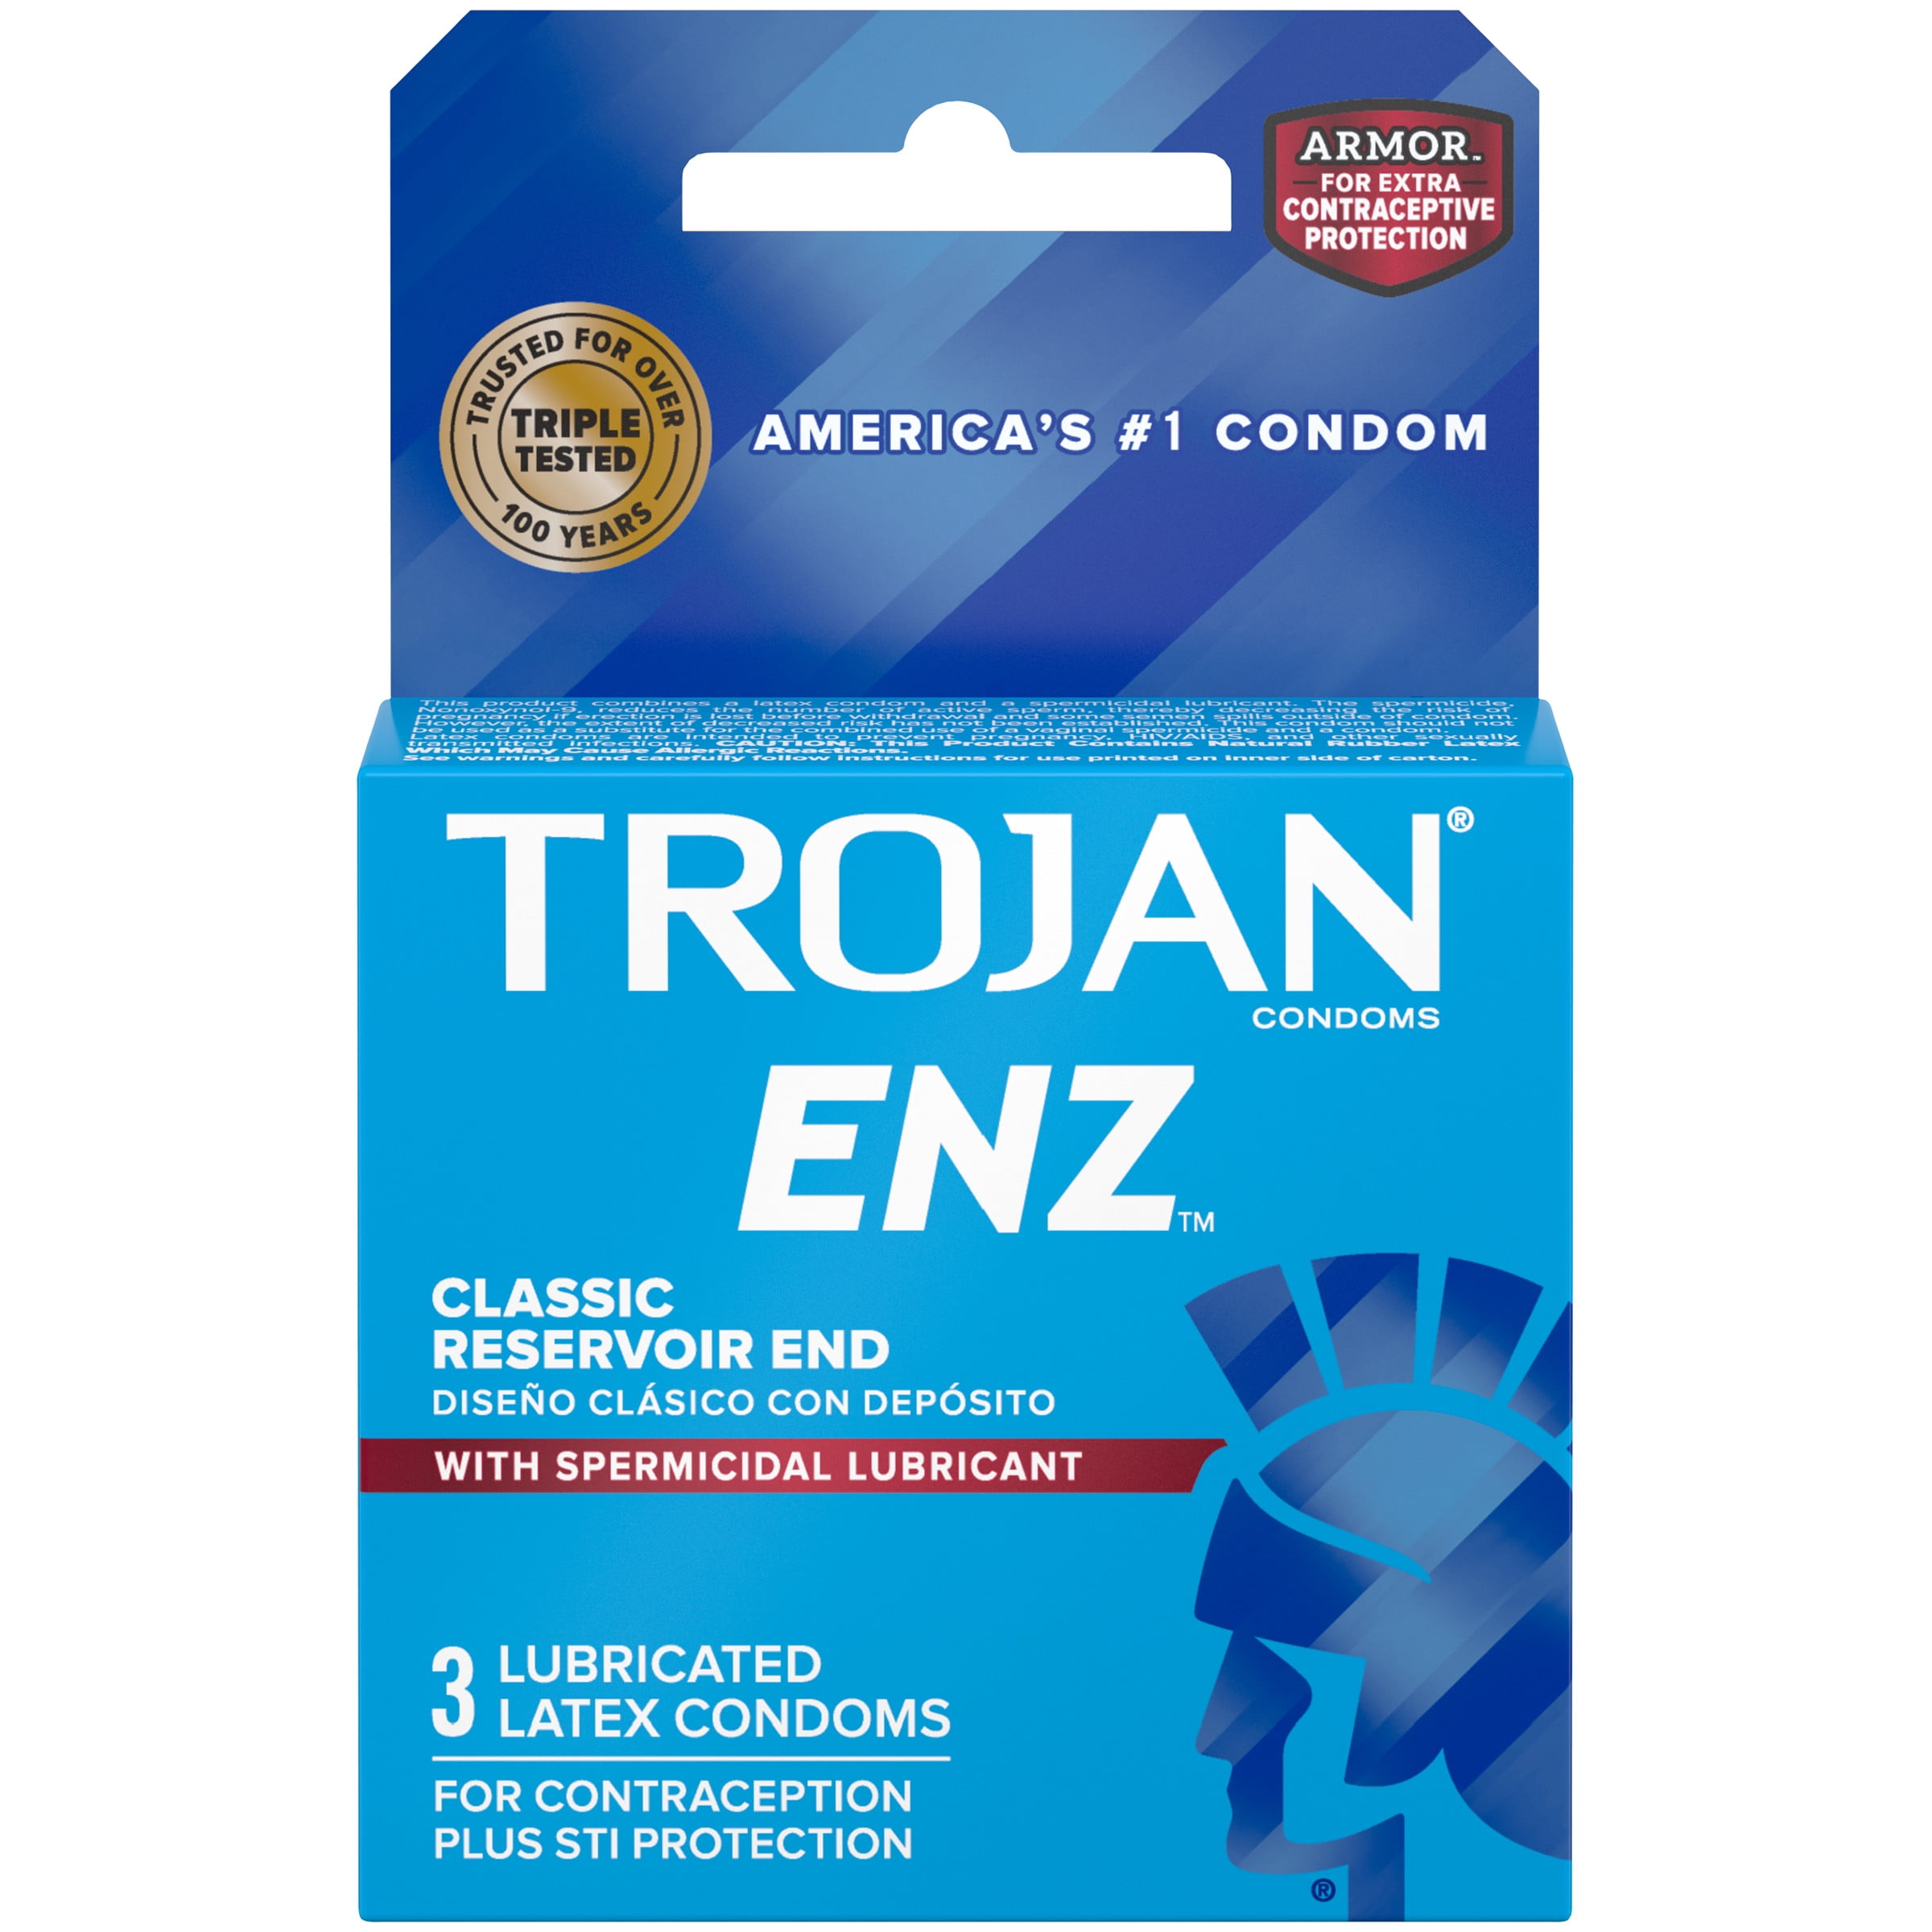 Trojans condom is what smallest TROJANS MAGNUM